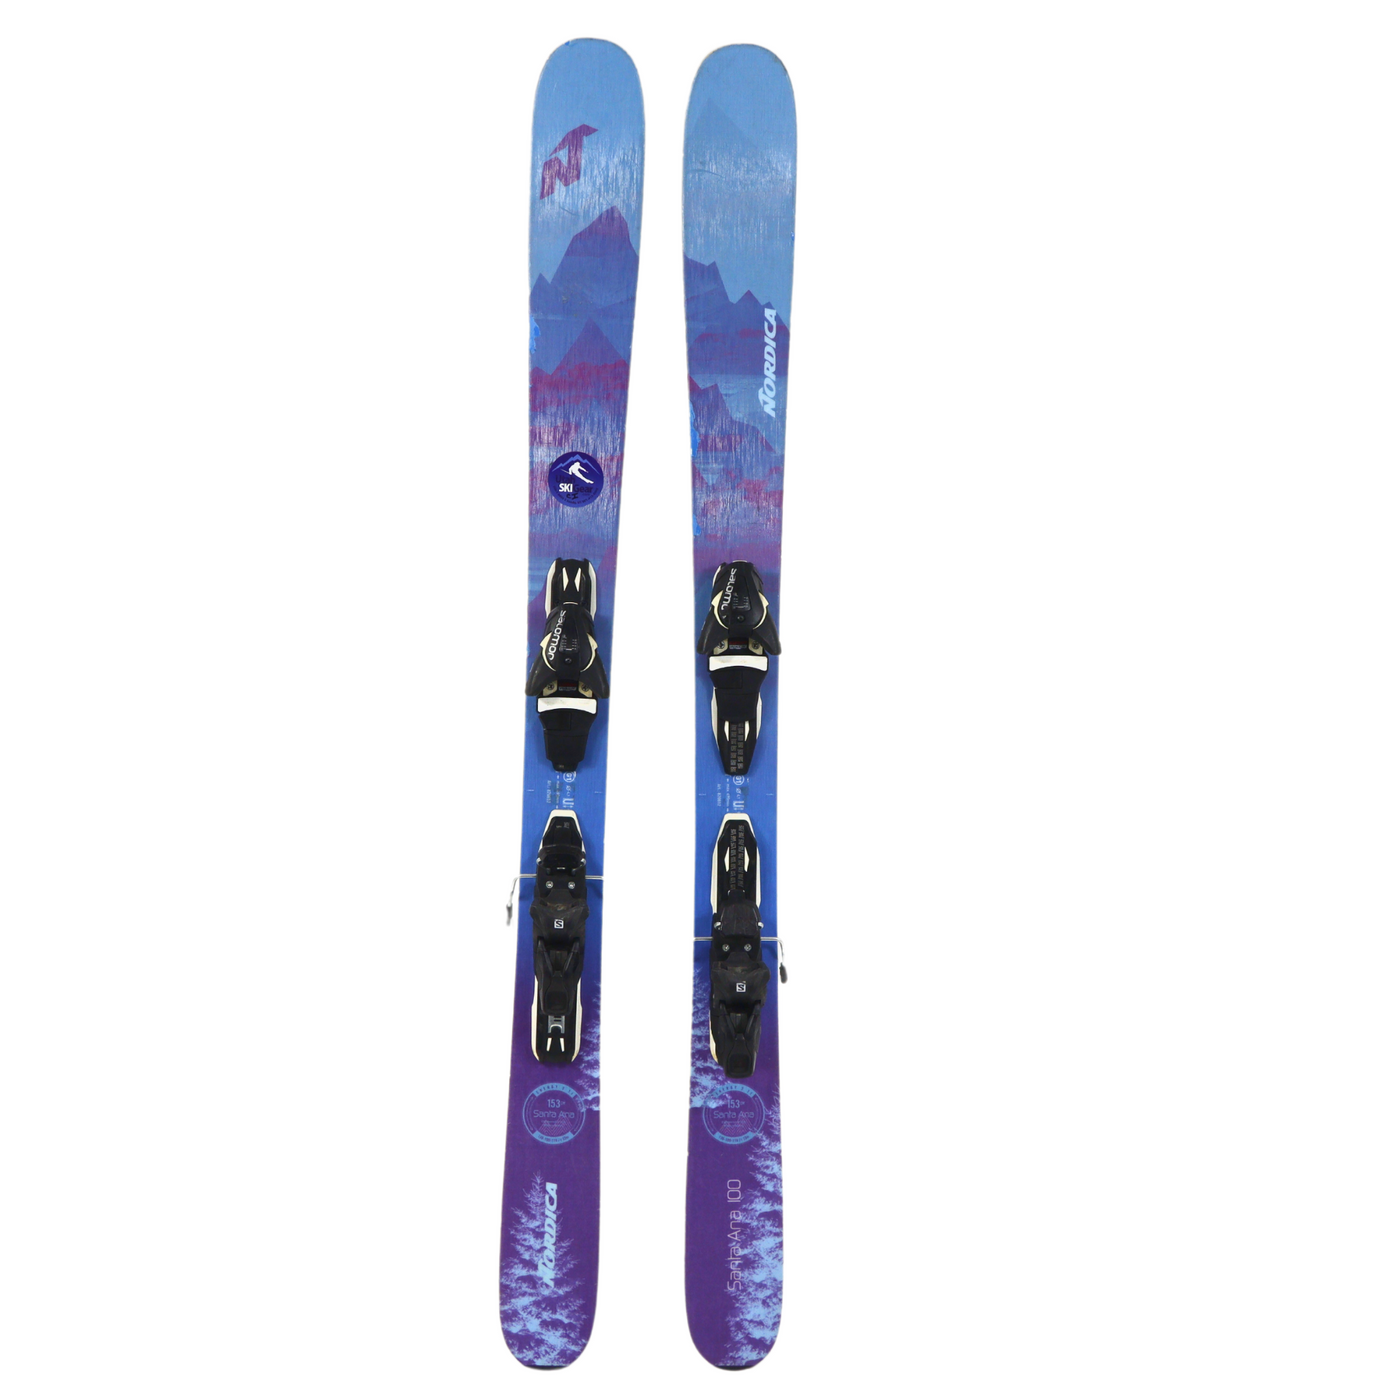 Nordica Santa Ana 100 153cm Skis + Salomon Z11 Demo Bindings 2020 – USED SKIS Nordica   